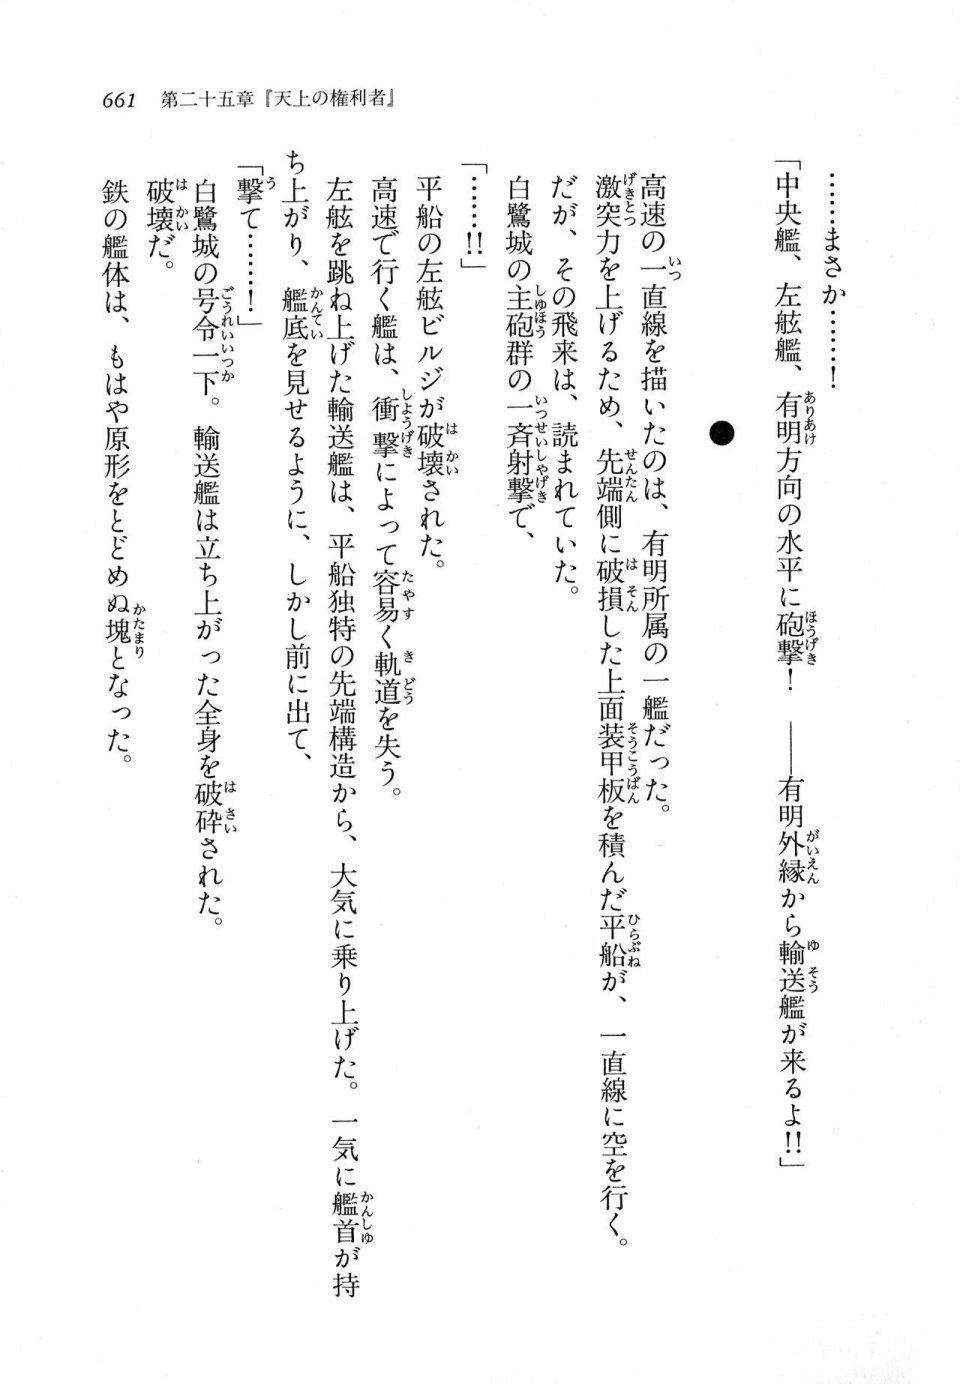 Kyoukai Senjou no Horizon LN Vol 11(5A) - Photo #661